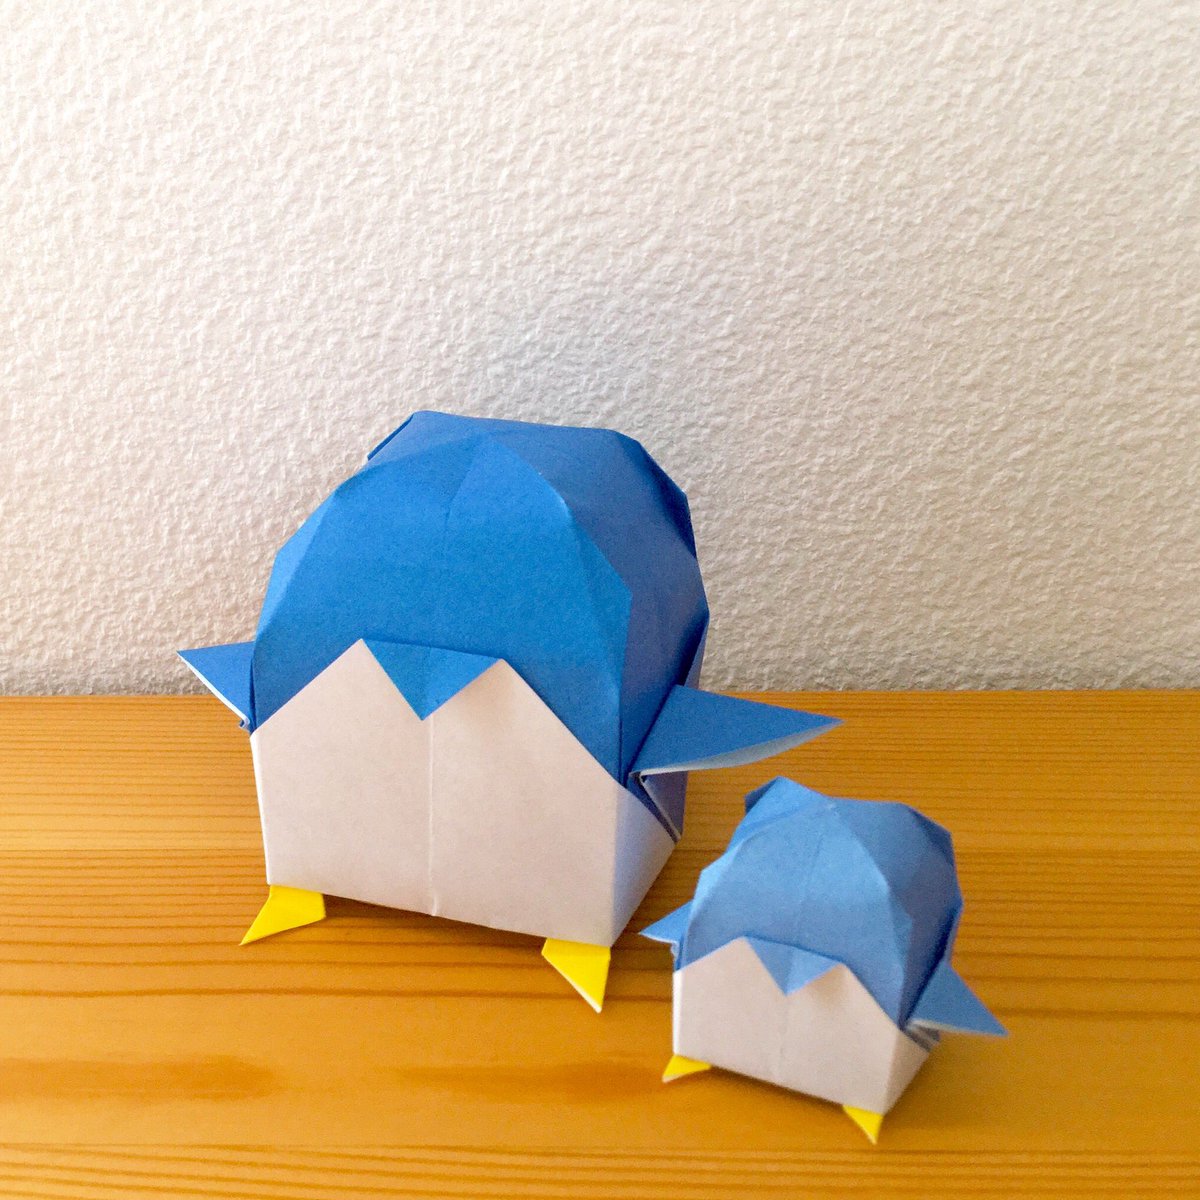 Origami Twitterren 折り紙のいいところ 表と裏の両面を活かせること 紙の表面の青で体を 裏面の白で腹を表現したペンギン 折り紙の表と裏の色が違うからこそ表現できる折り紙がある 1年中楽しむ かわいい実用おりがみ 山口真 著 より ペンギン